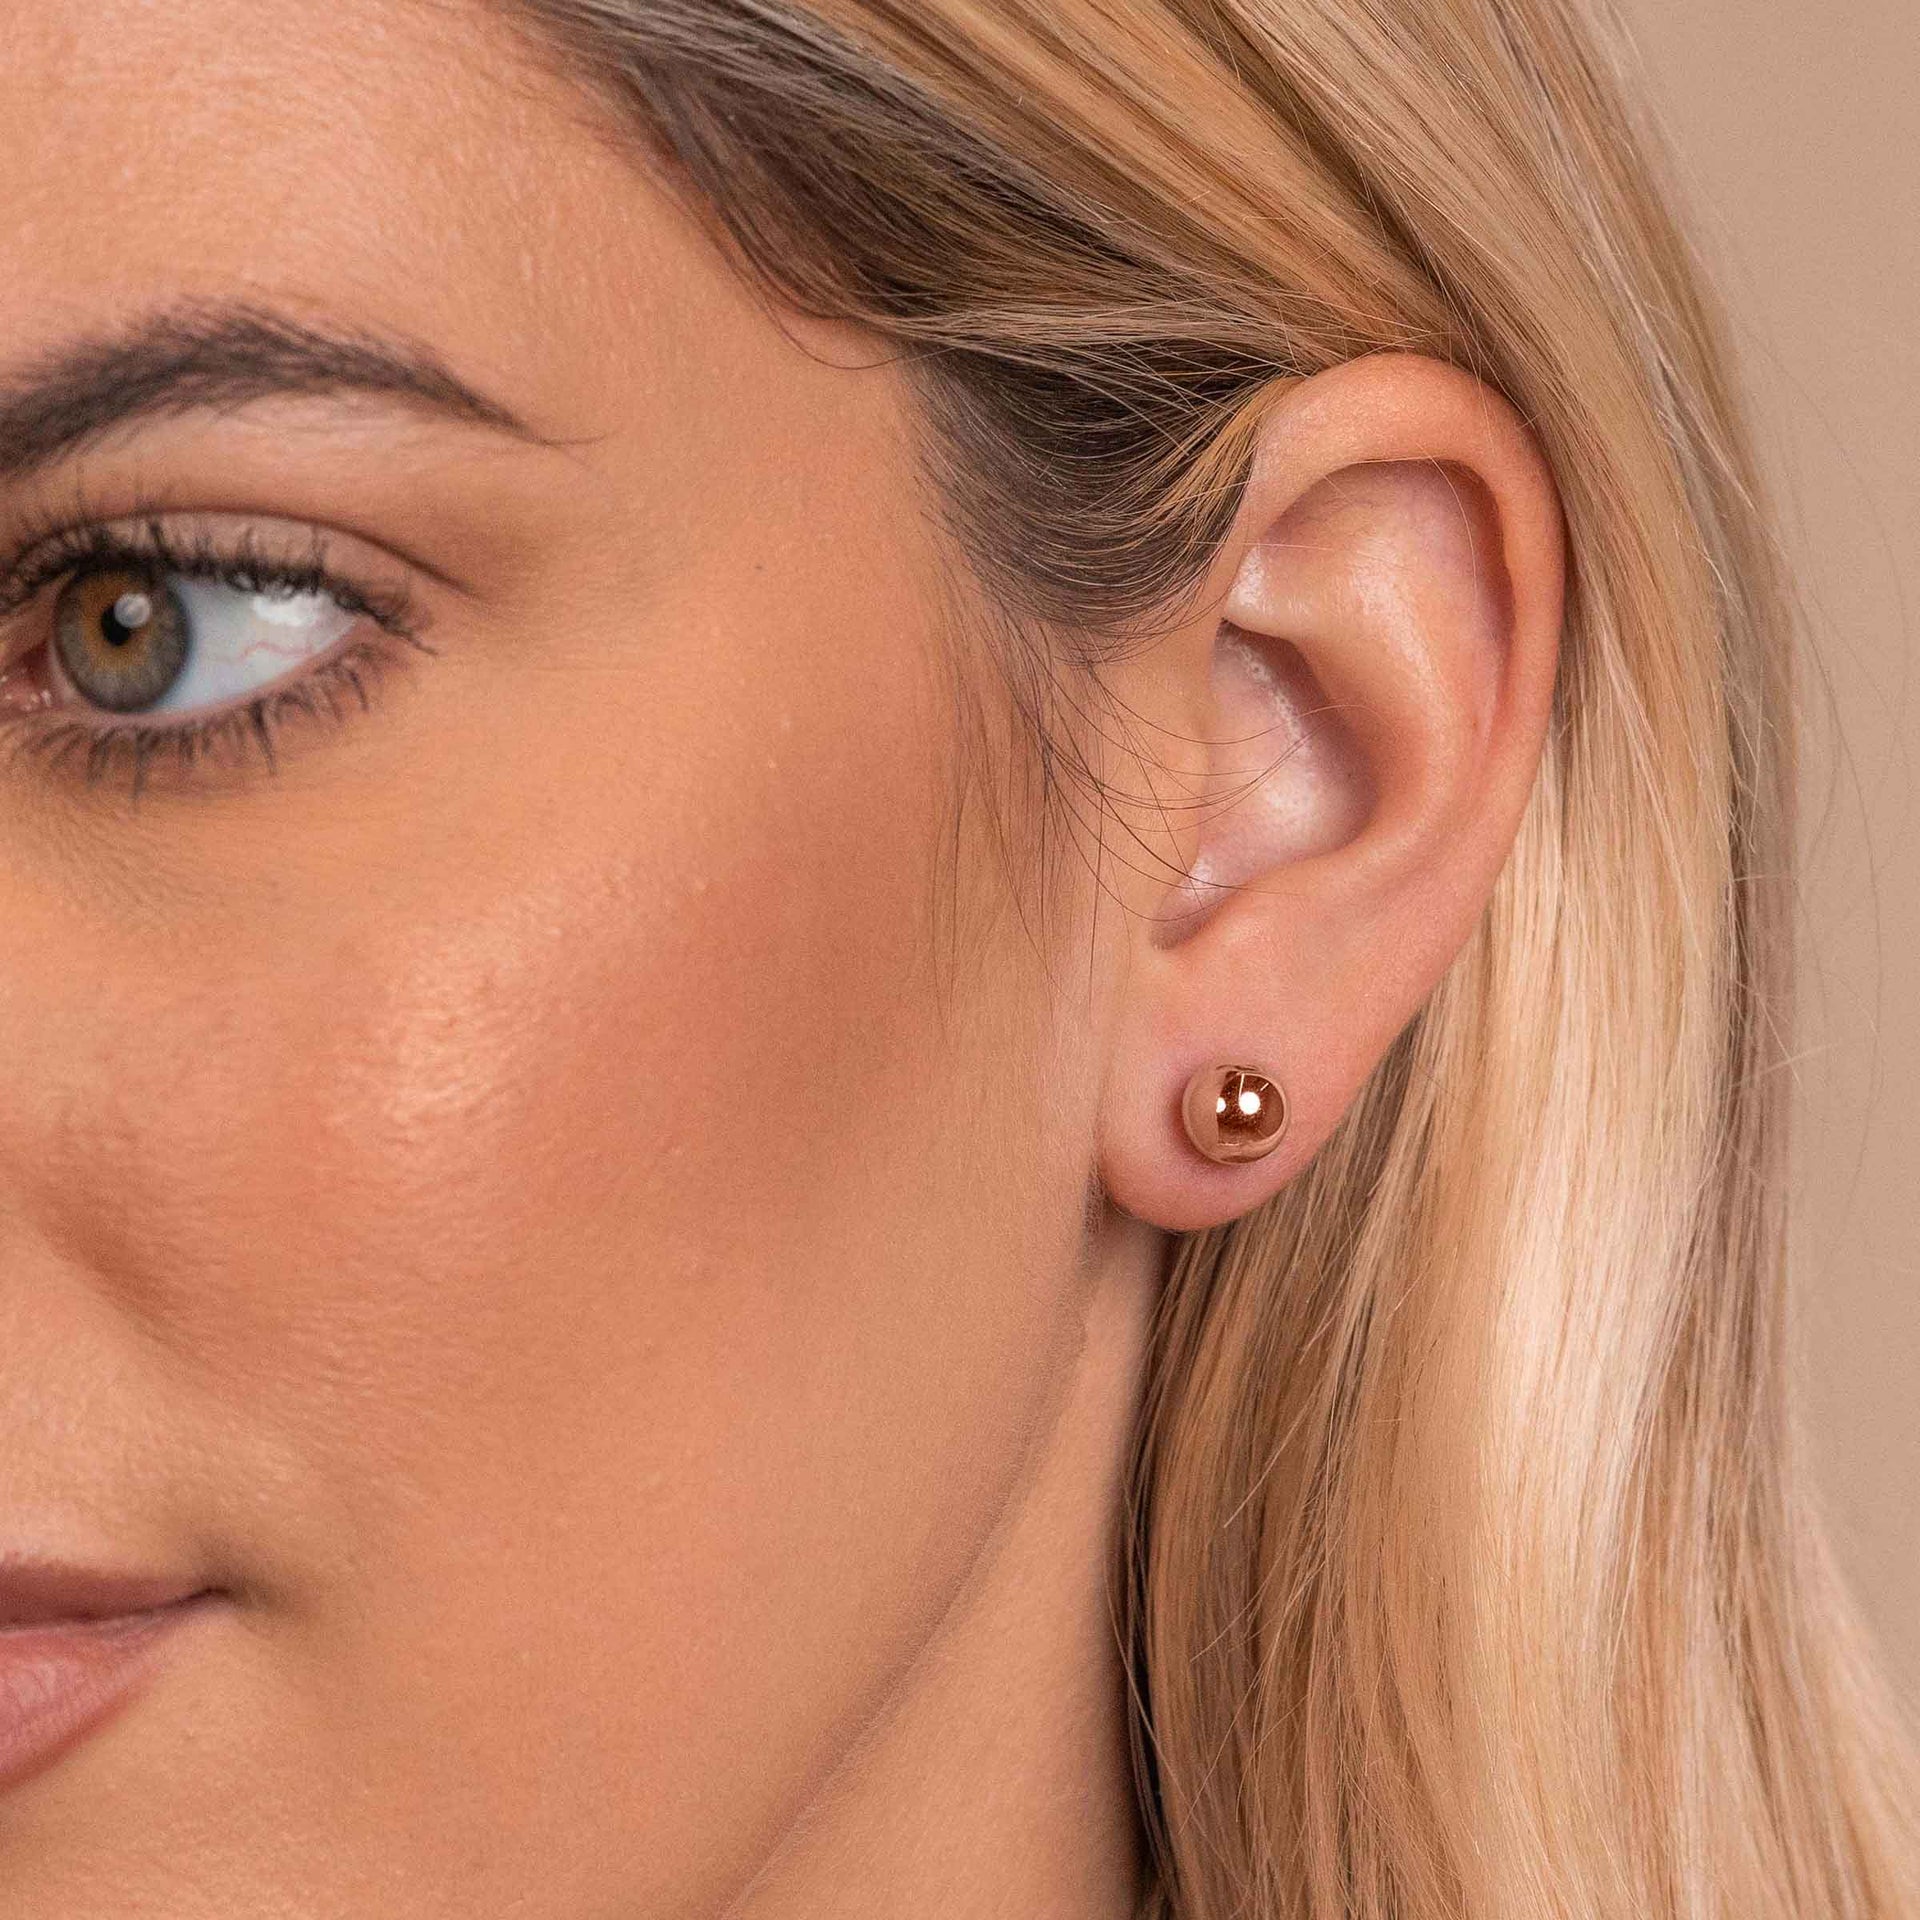 Woman wearing rose gold ball stud earrings